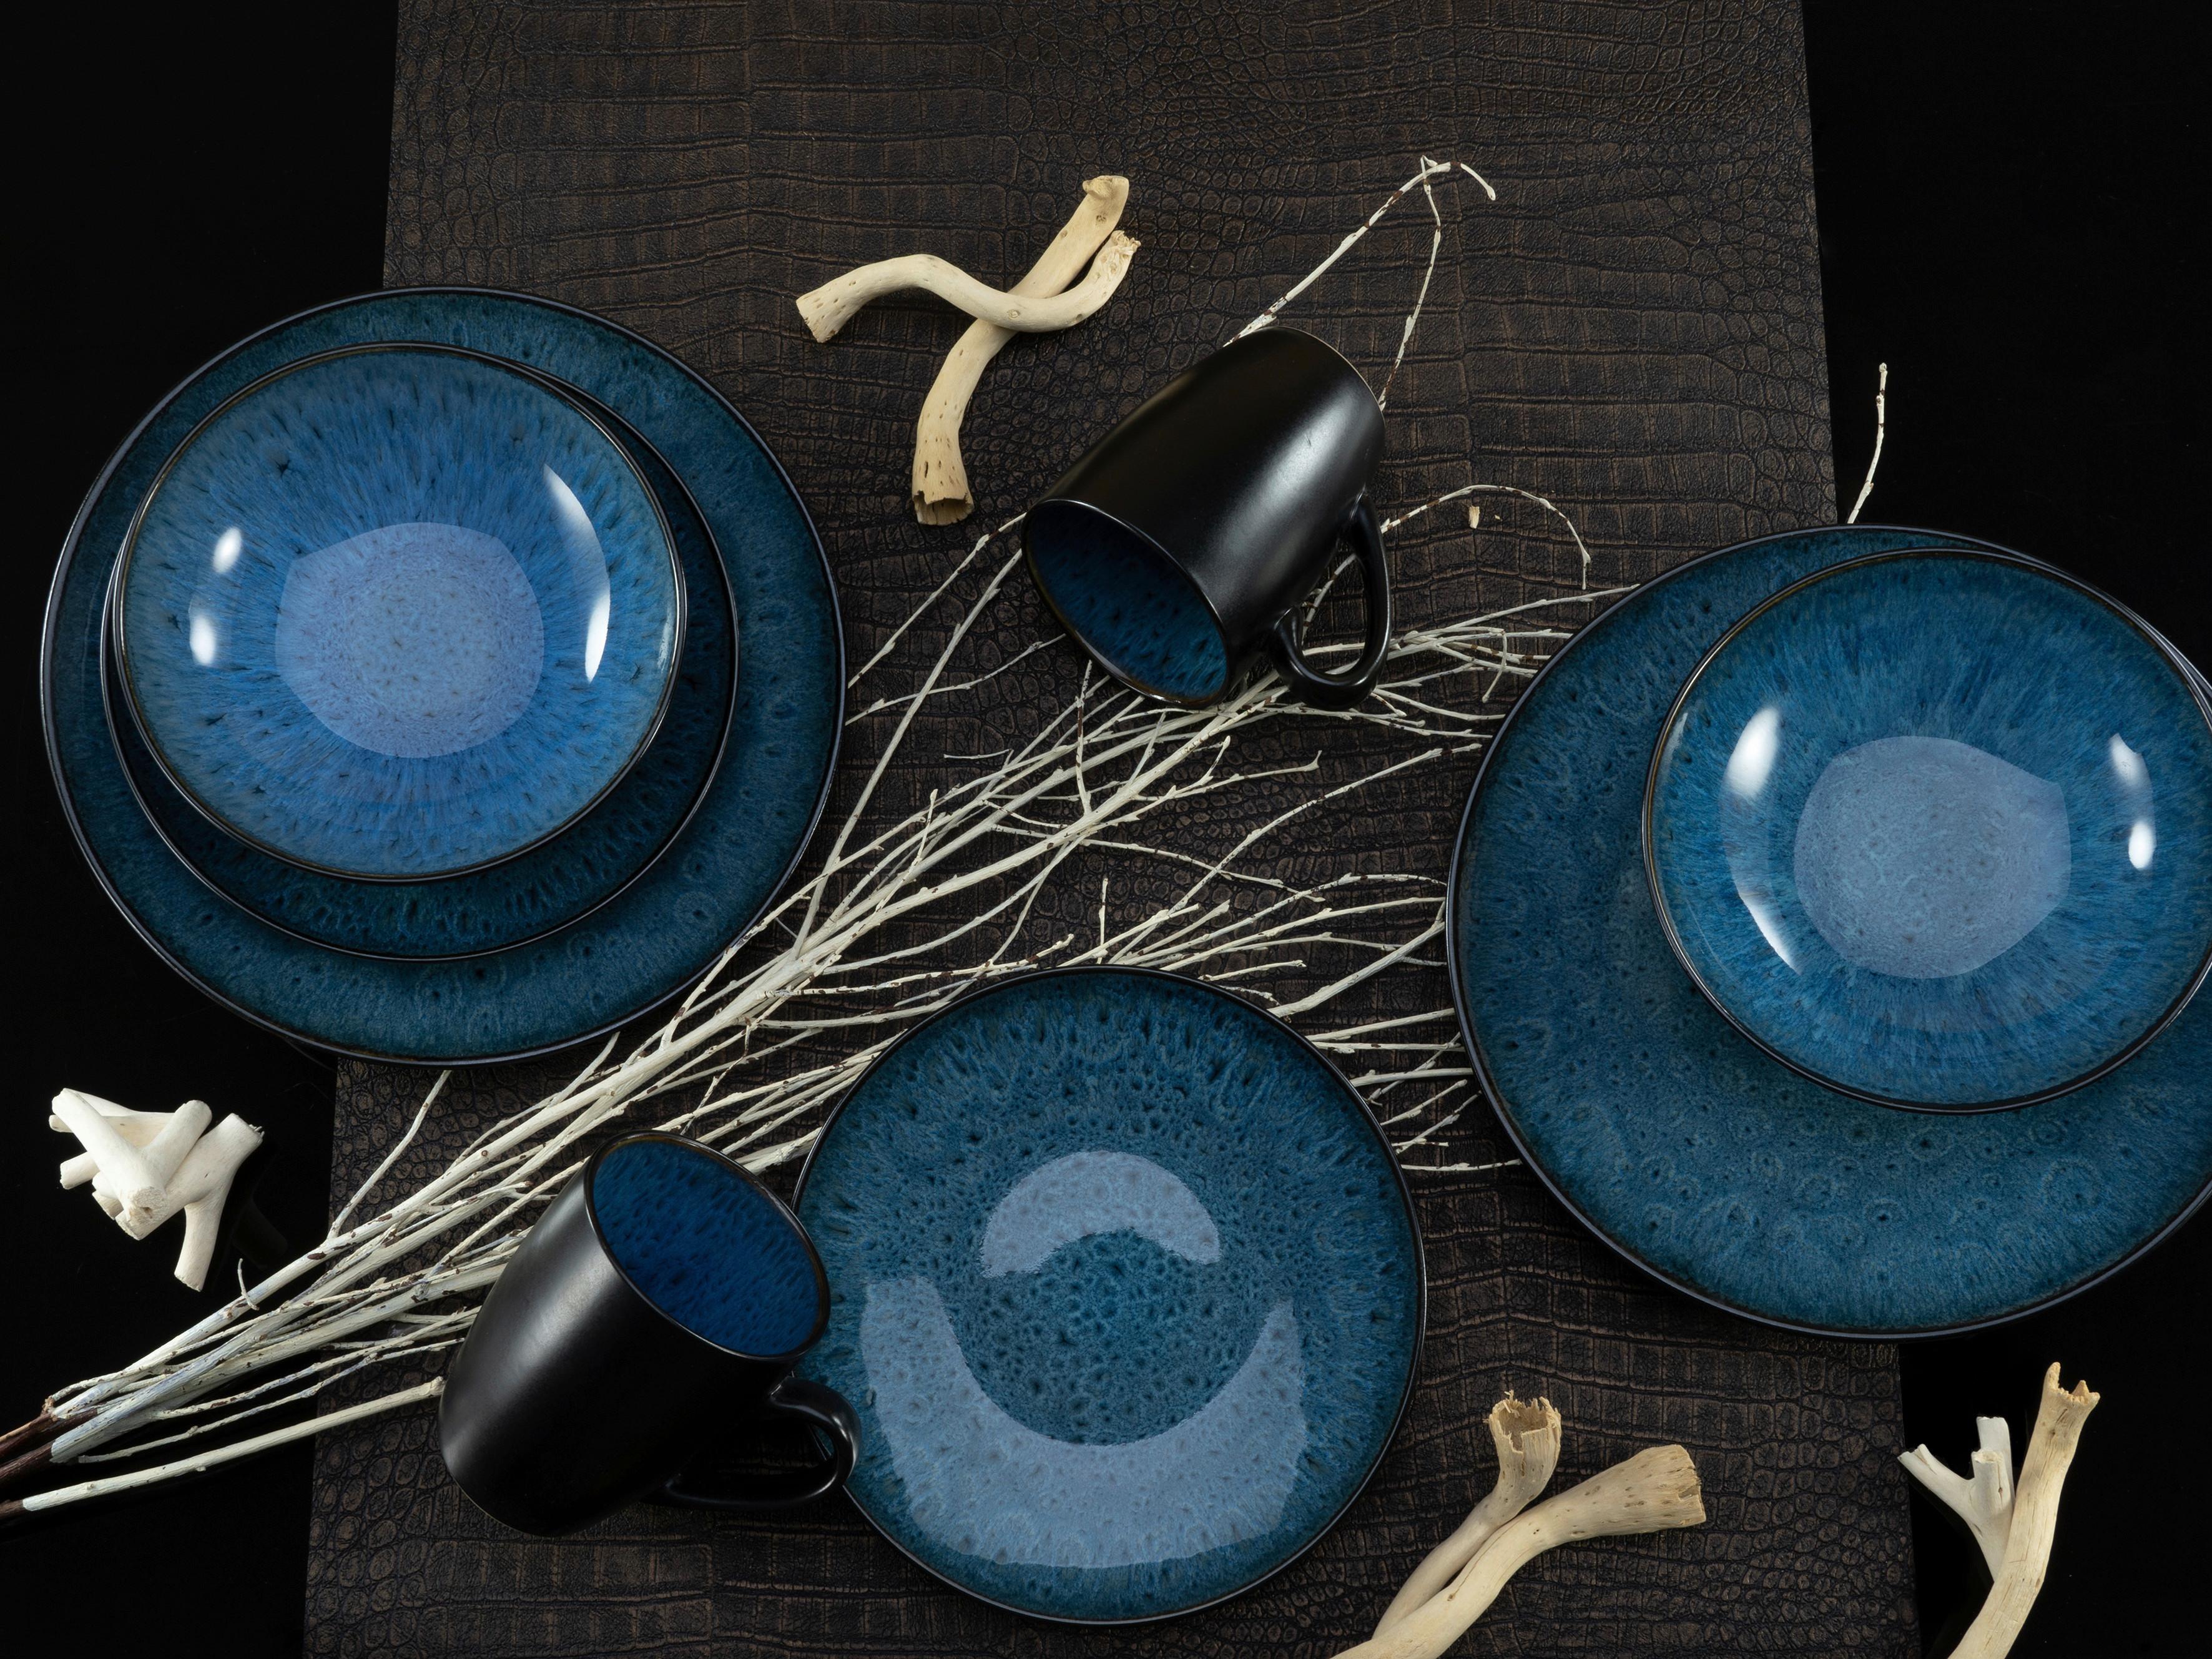 SERWIS OBIADOWO-ŚNIADANIOWY 23630 - ciemnoniebieski/niebieski, Trend, ceramika (40/26/31cm) - Creatable